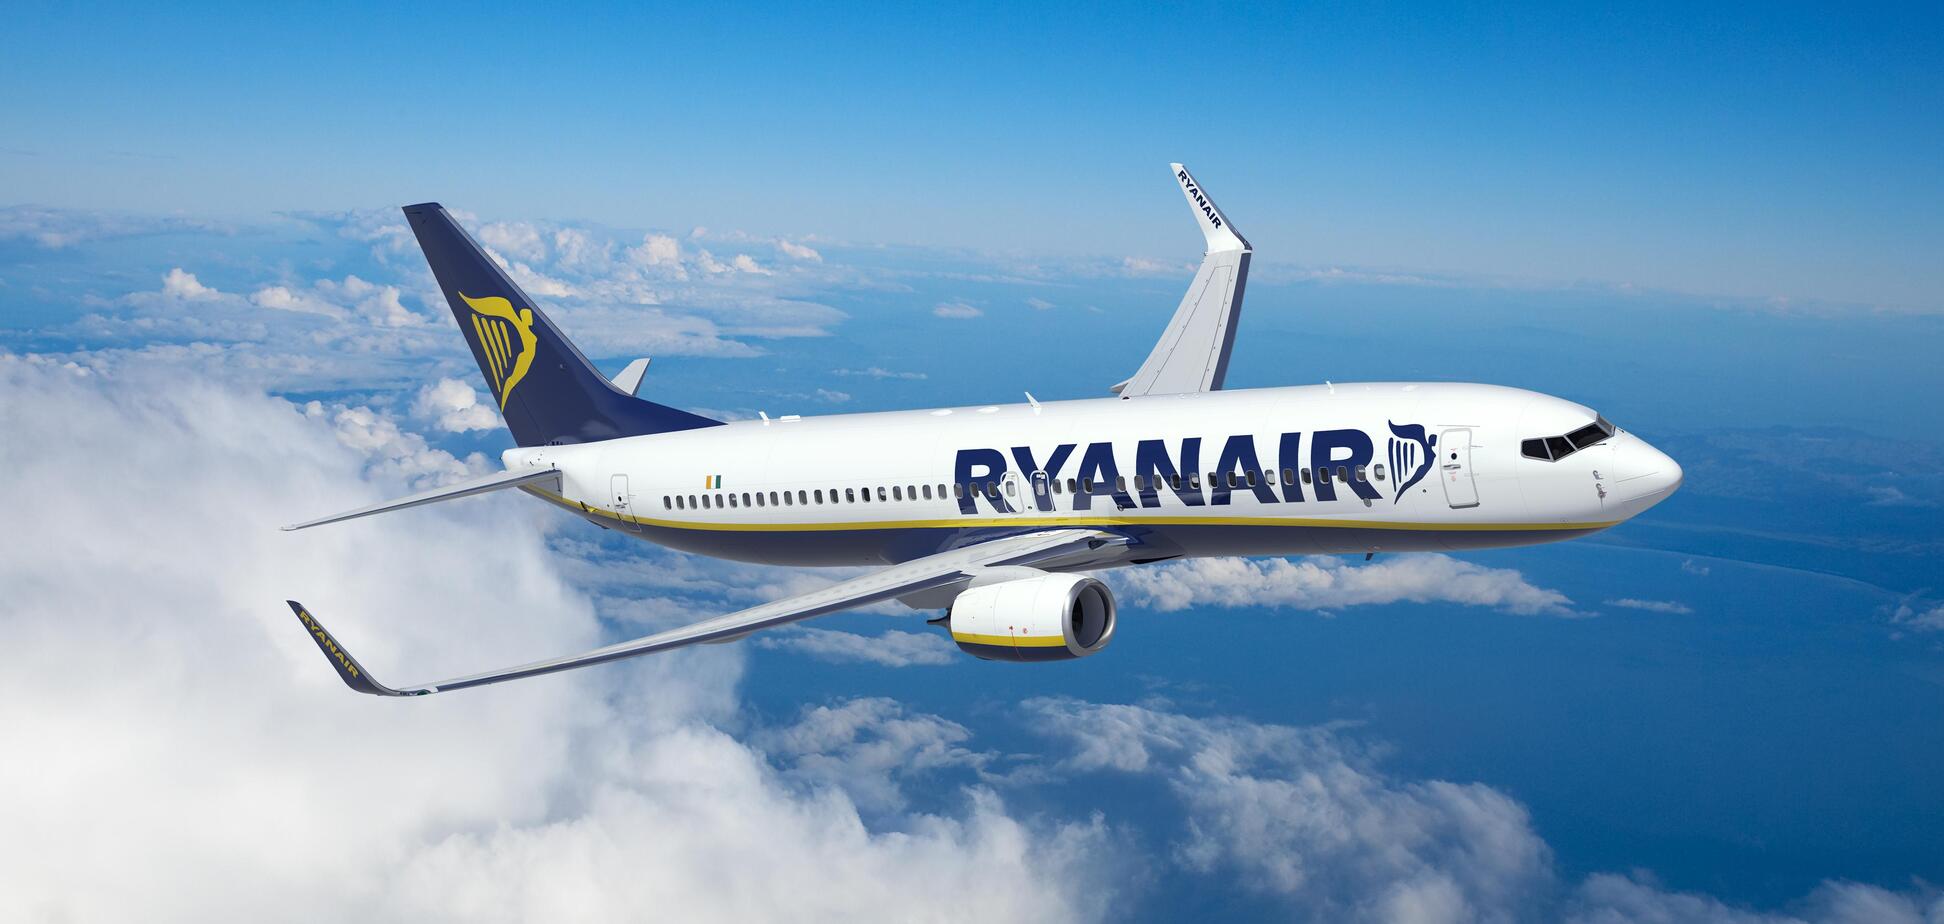 Ryanair будет летать из Украины: стала известна дата